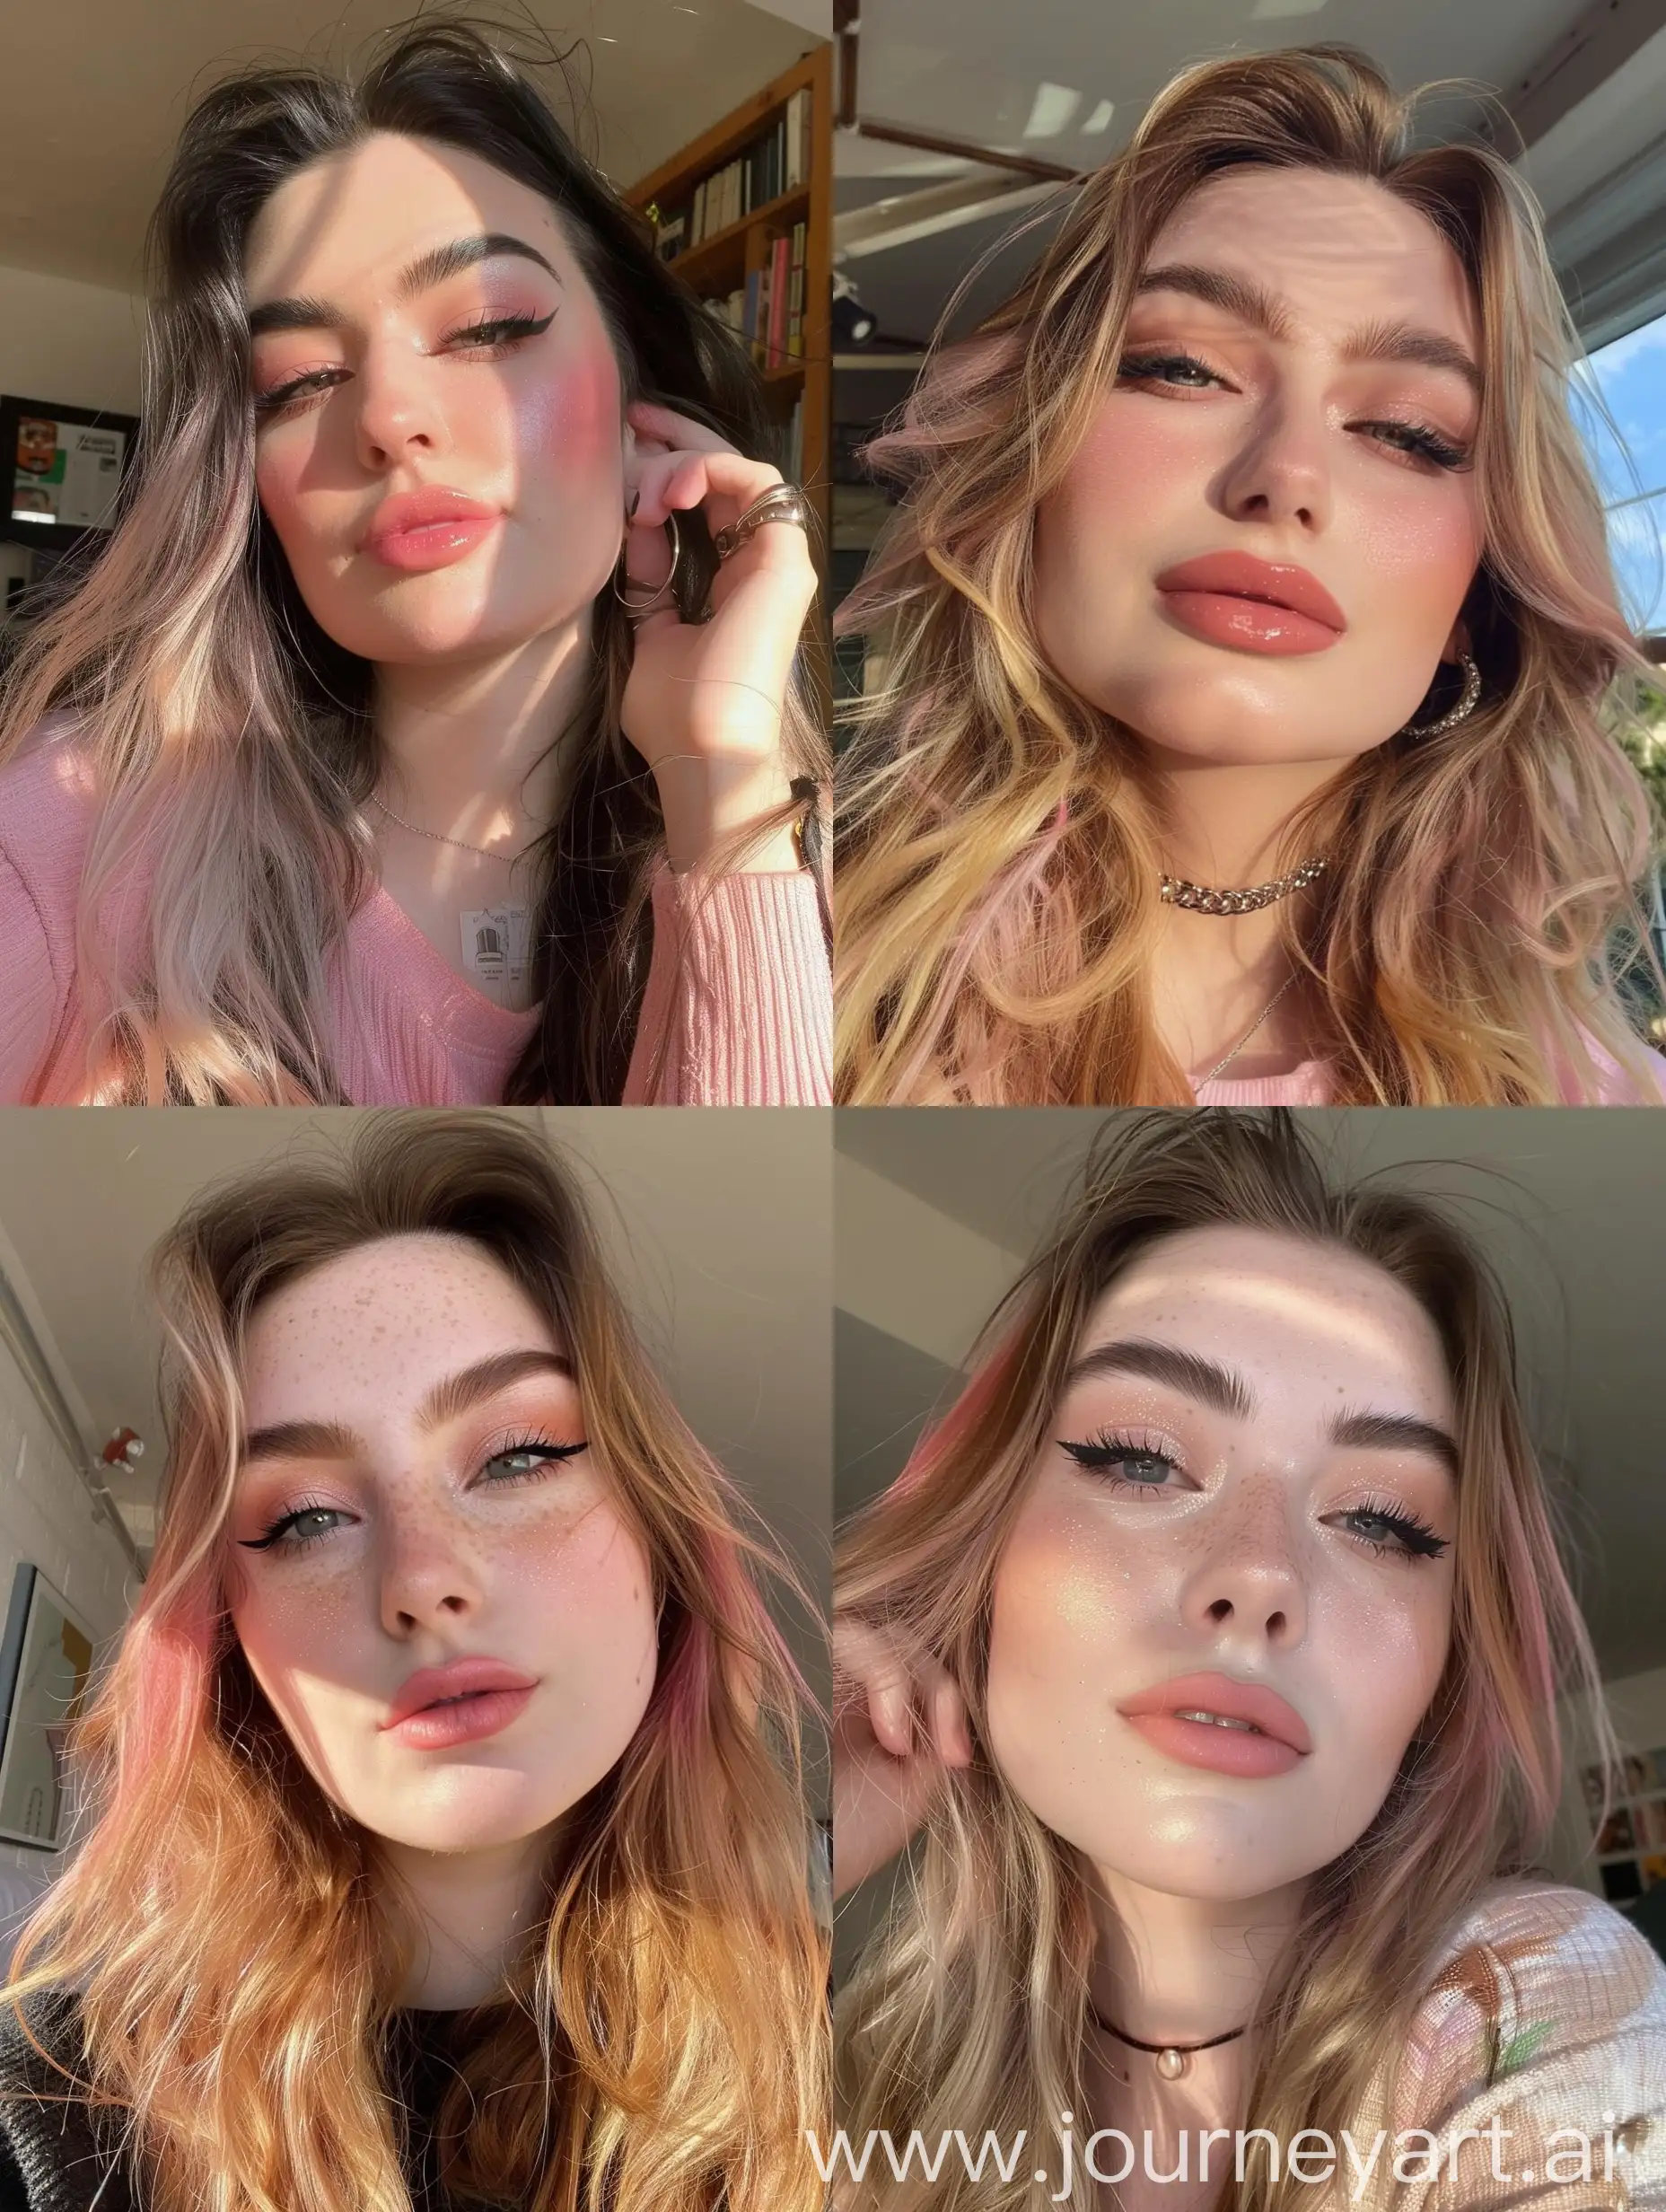 Aesthetic Instagram selfie of a super model girl